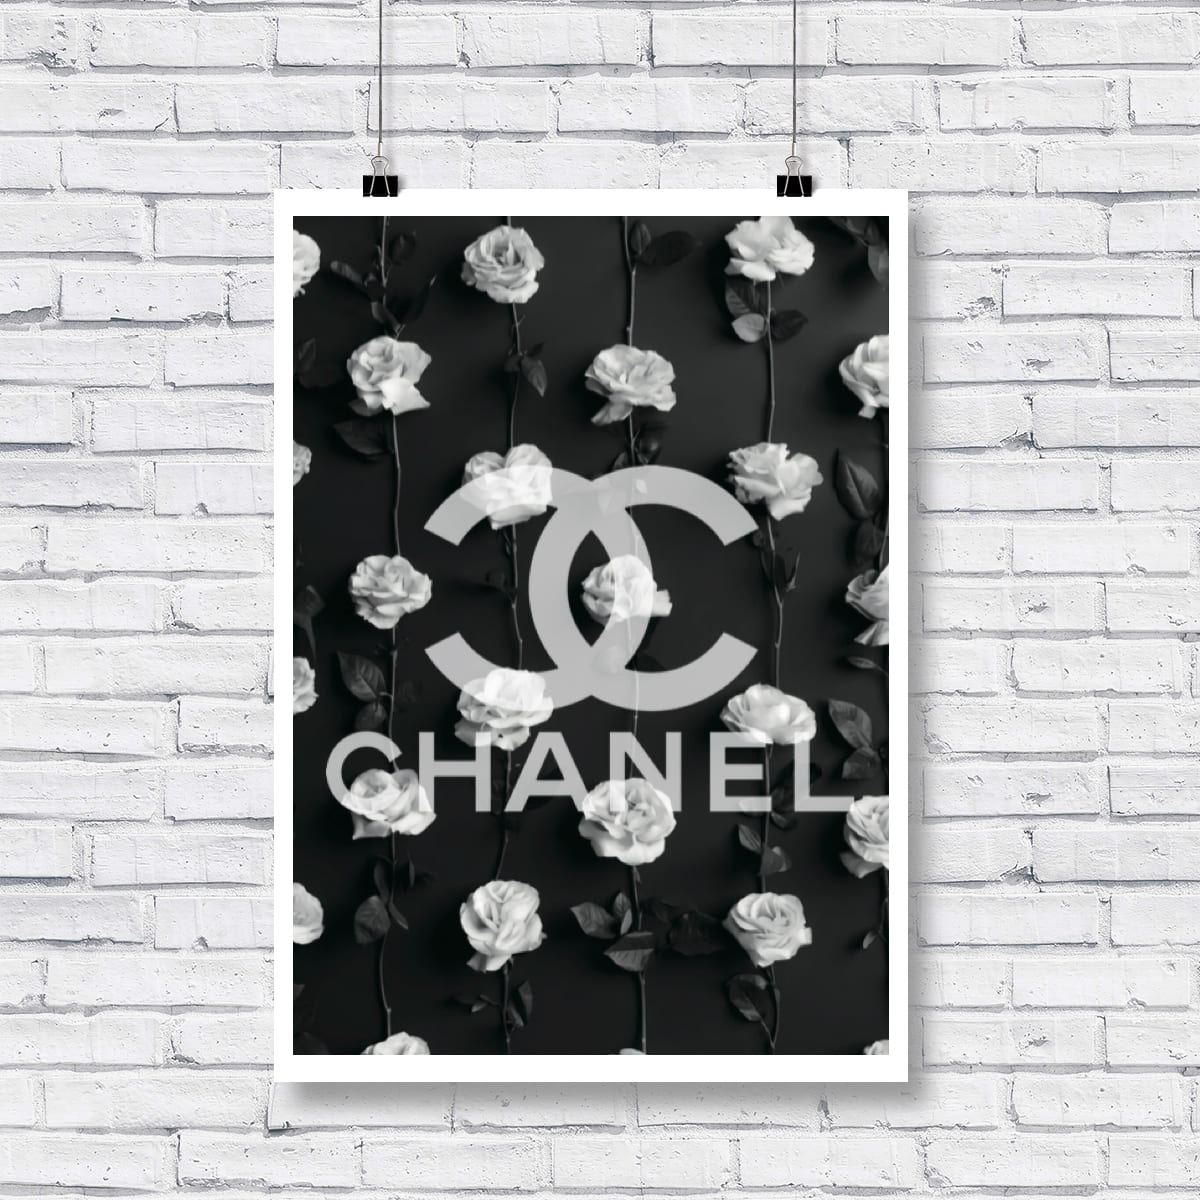 楽天市場 お部屋をアートでハッピーに彩ろう 送料無料 Grace Cat Art サイズが選べるアートポスター アートパネル キャンバスパネル アート グラフィック アート インテリア アート ギフト オマージュモチーフ Chanel シャネル ちょっと